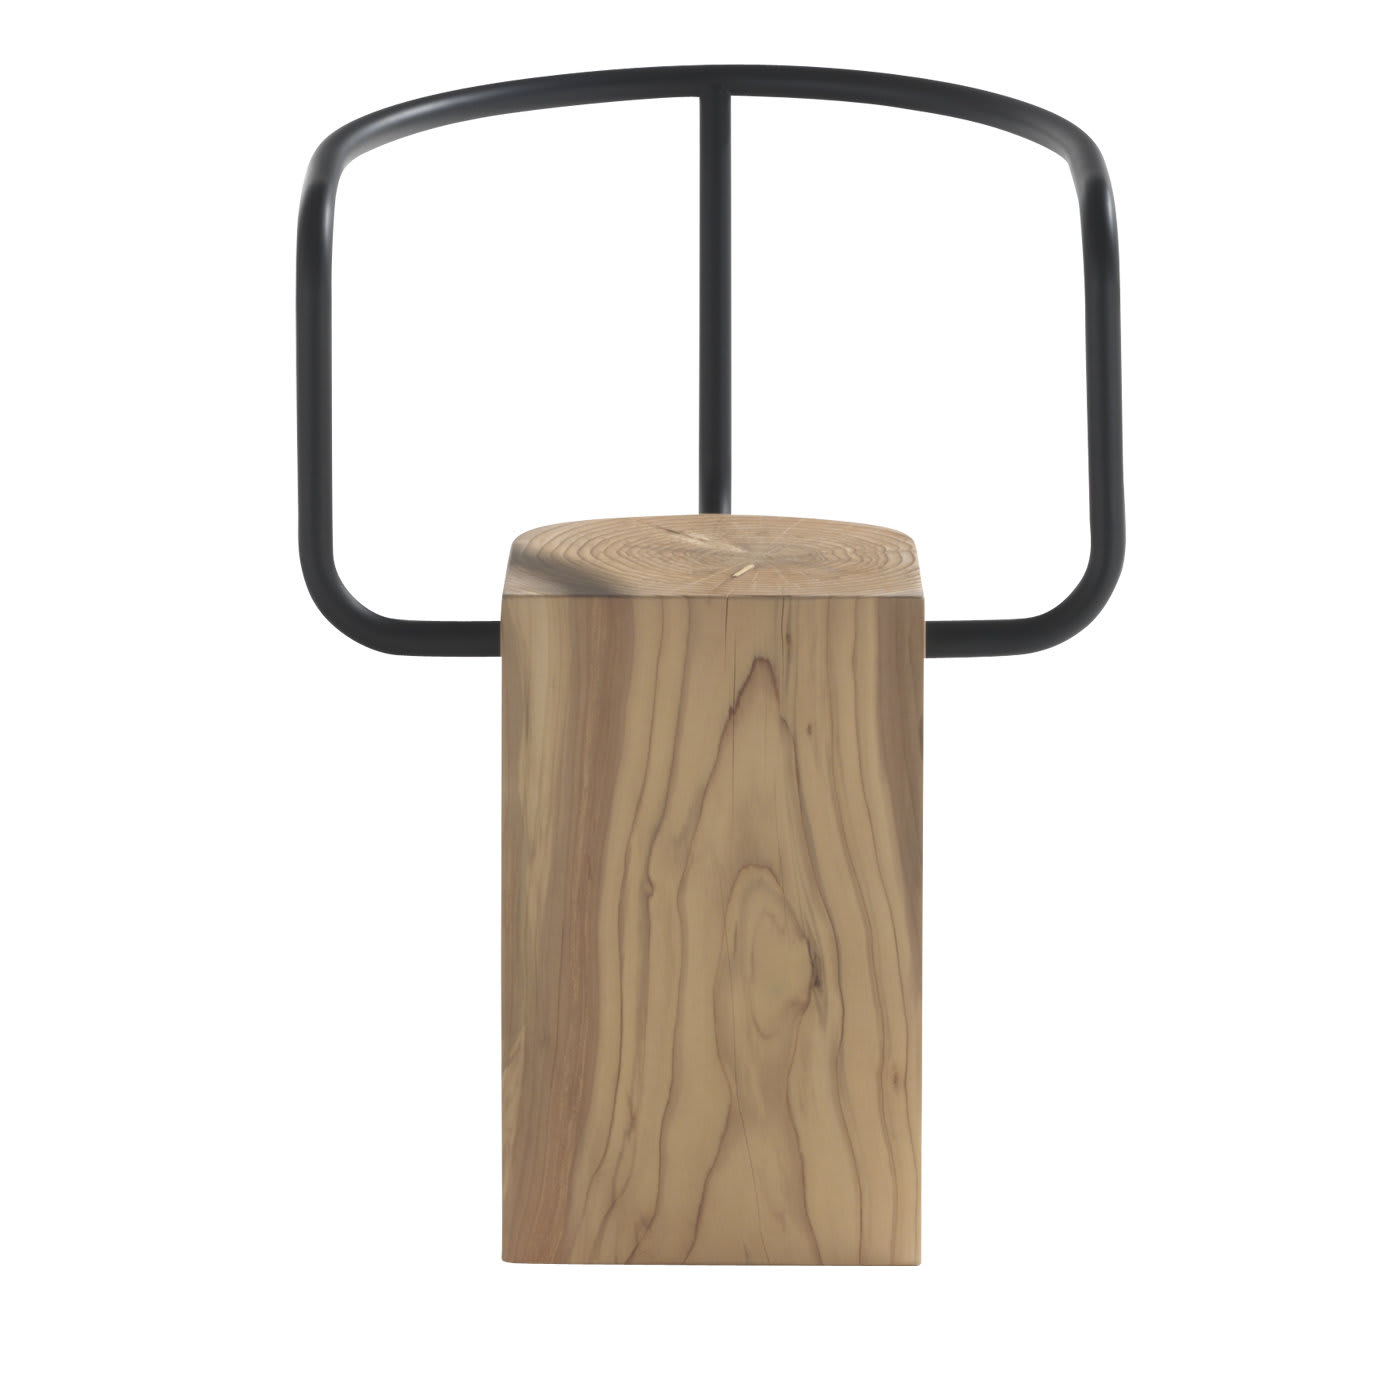 Graft Cedar Wood Chair - Durame